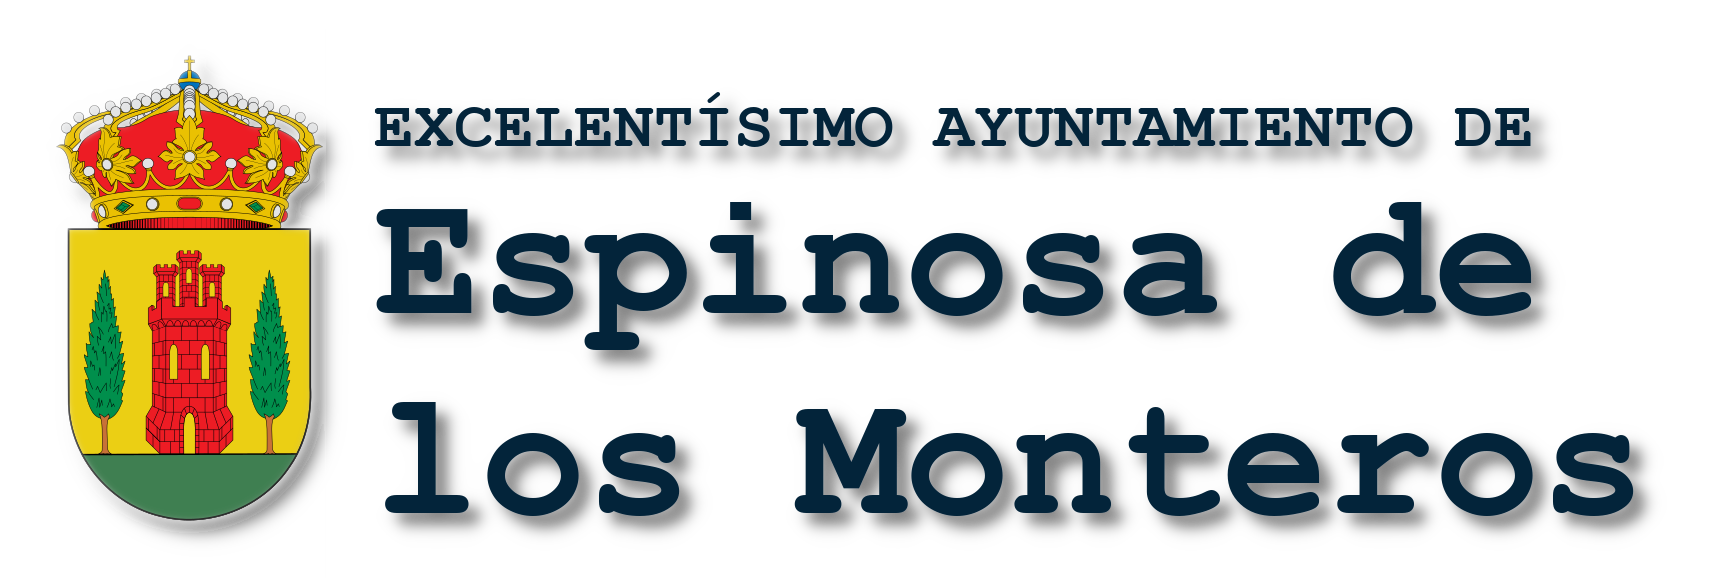 Logotipo de Espinosa de los Monteros